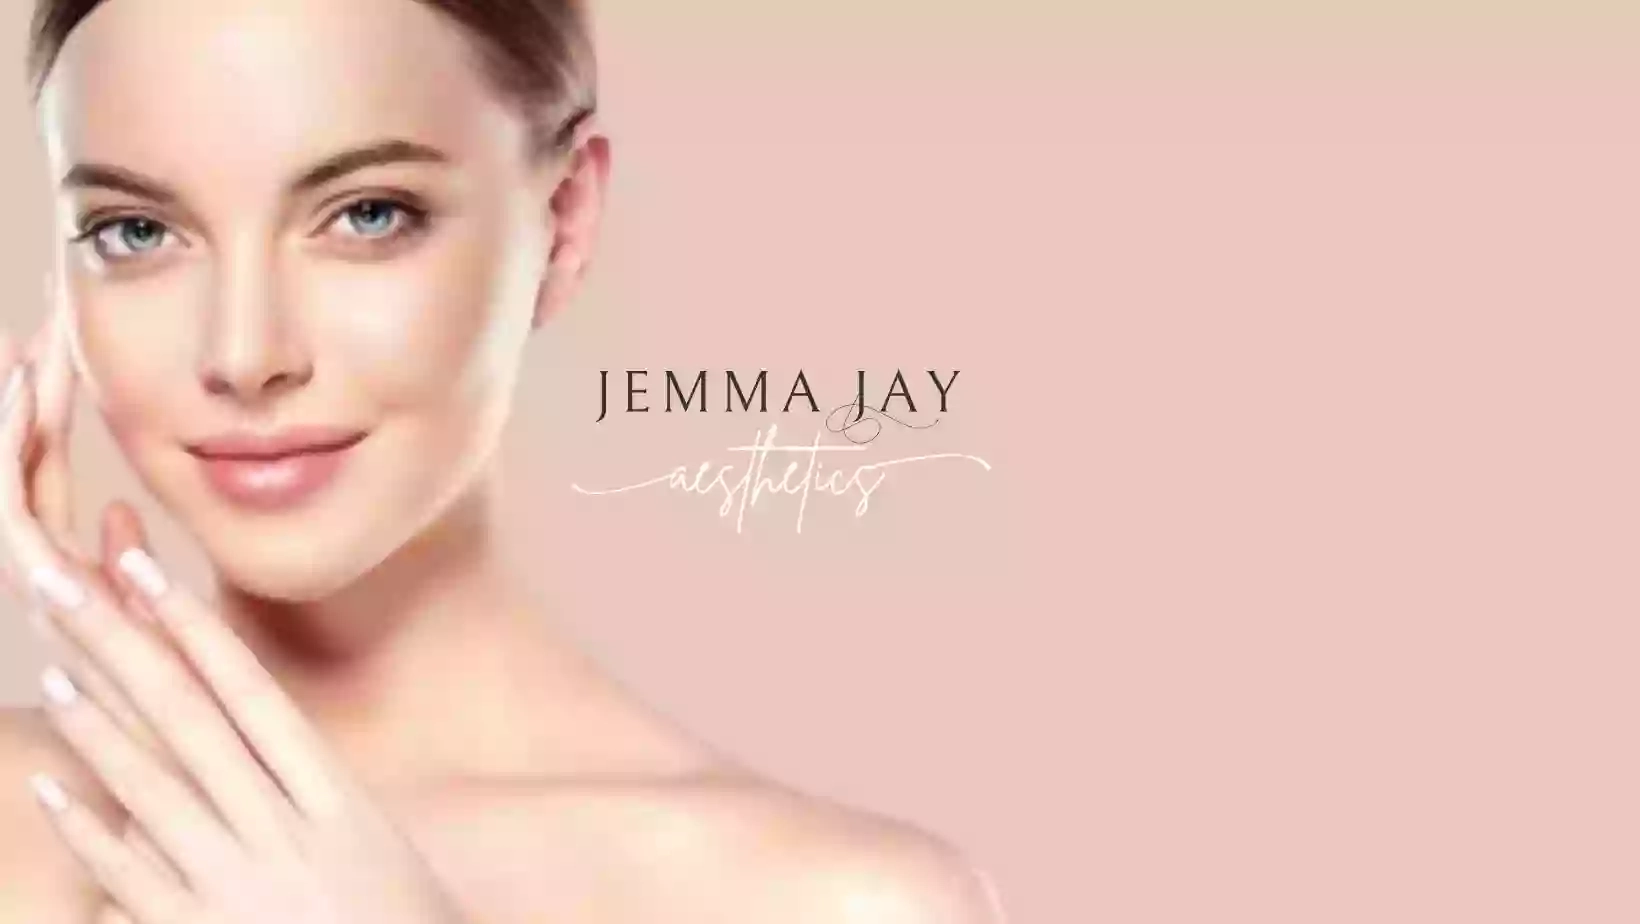 Jemma Jay Aesthetics